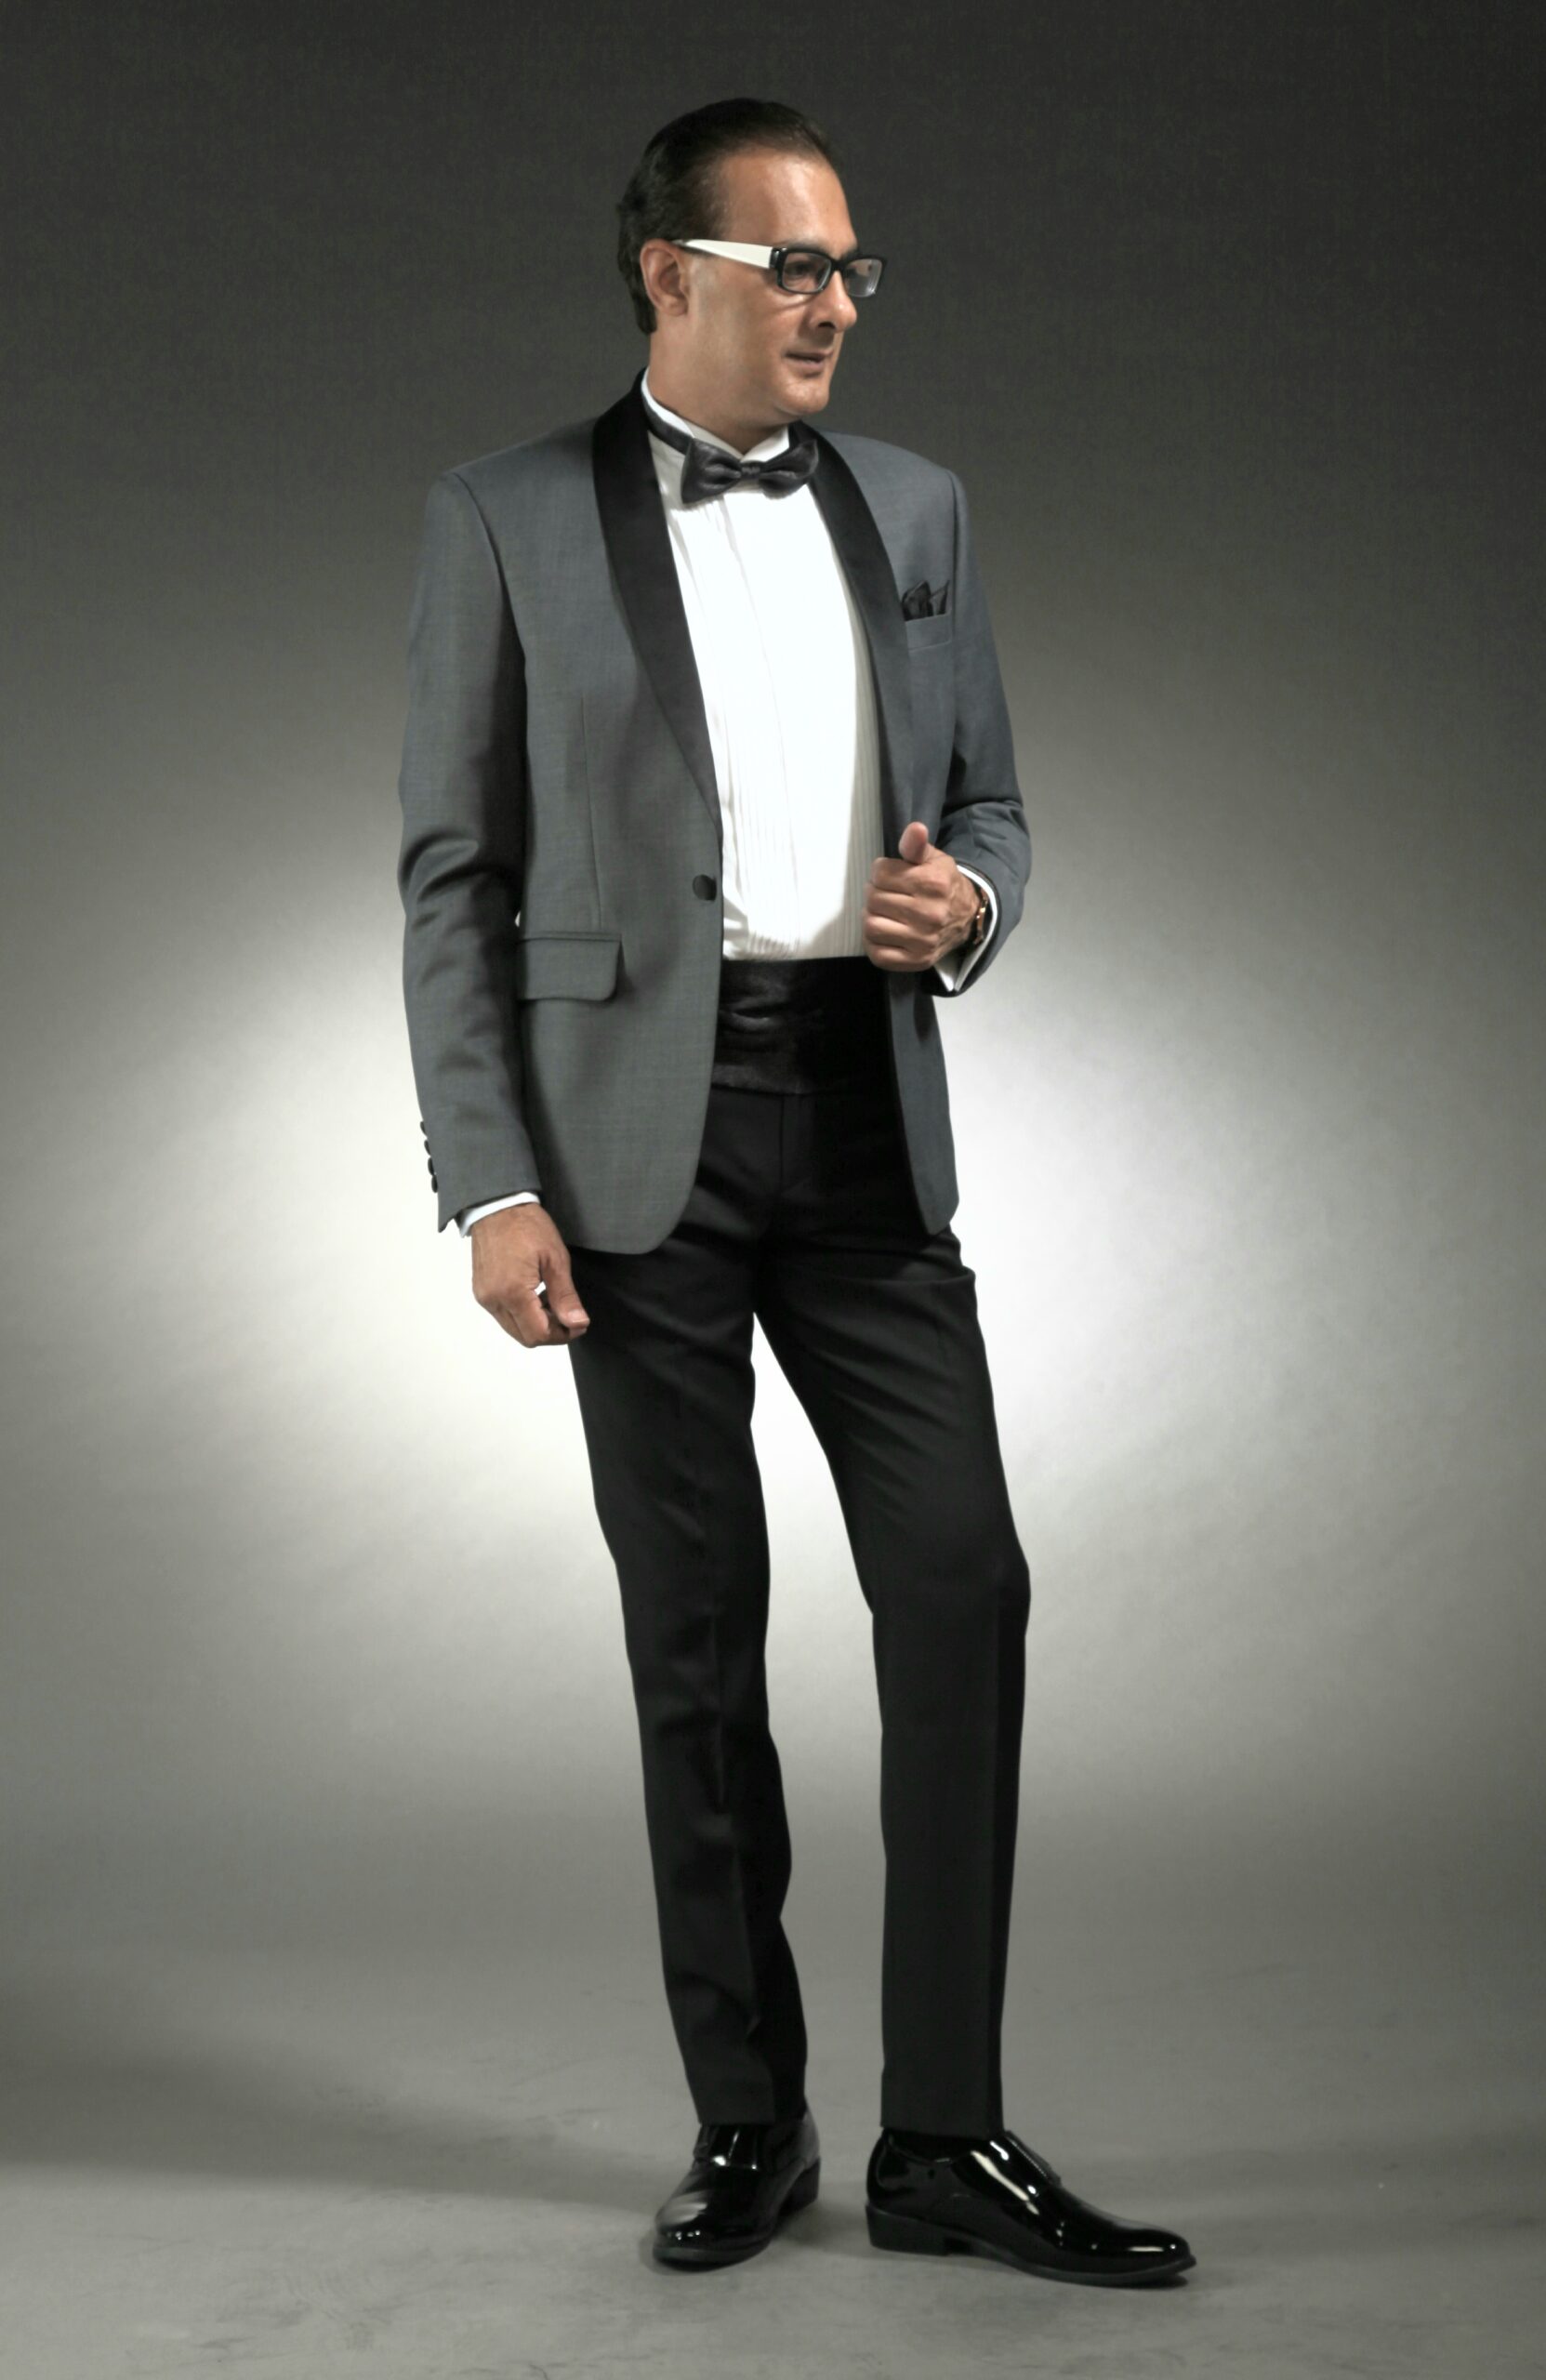 MST-5065-02-rent_rental_hire_tuxedo_suit_black_tie_suit_designer_suits_shop_tailor_tailors_singapore_wedding